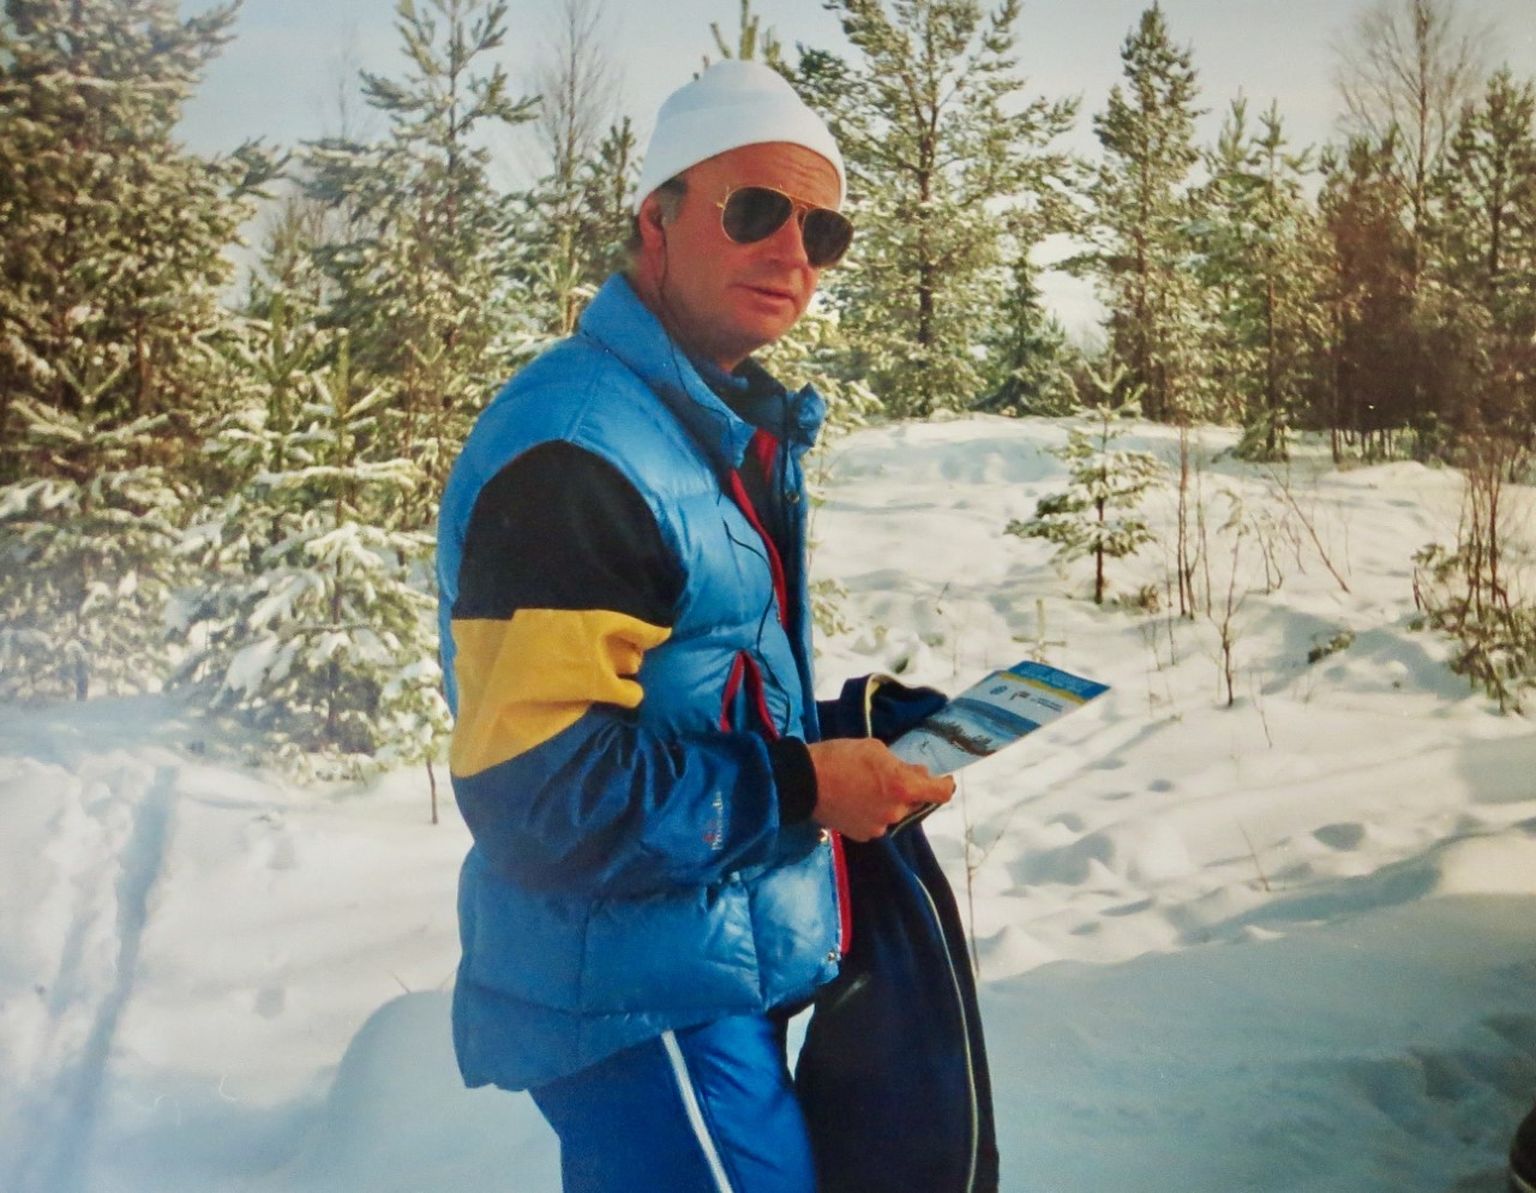 Rootsi kuningas 1993. aastal Falunis suusaalade MM-võistlustel, Eesti suusaliidu trükis peos.